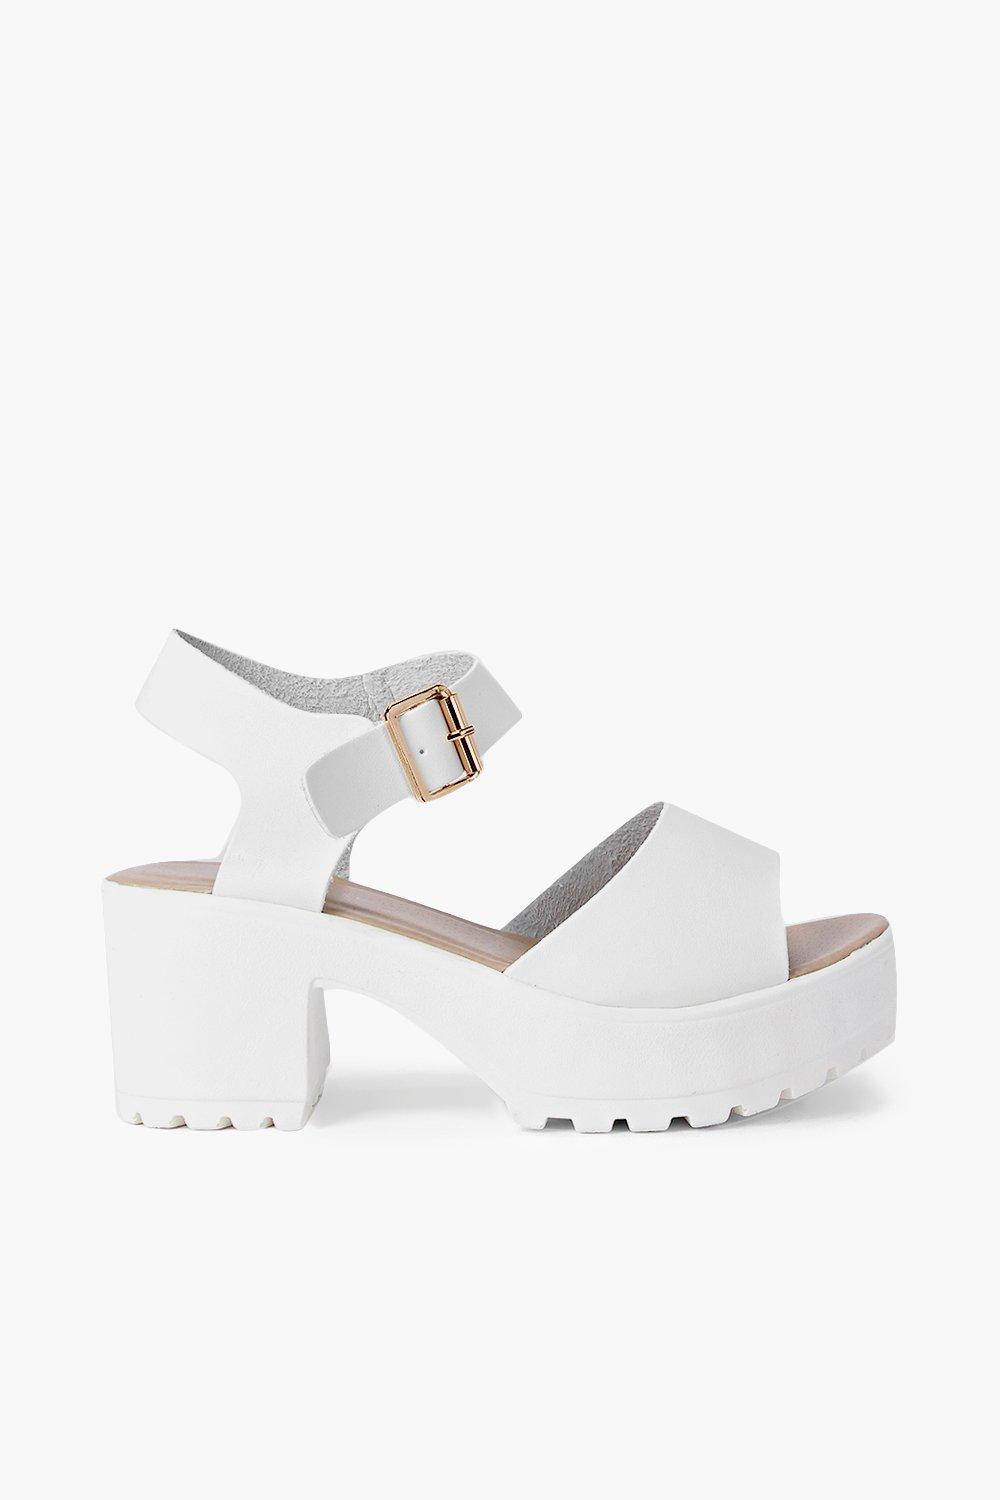 white sandals ireland